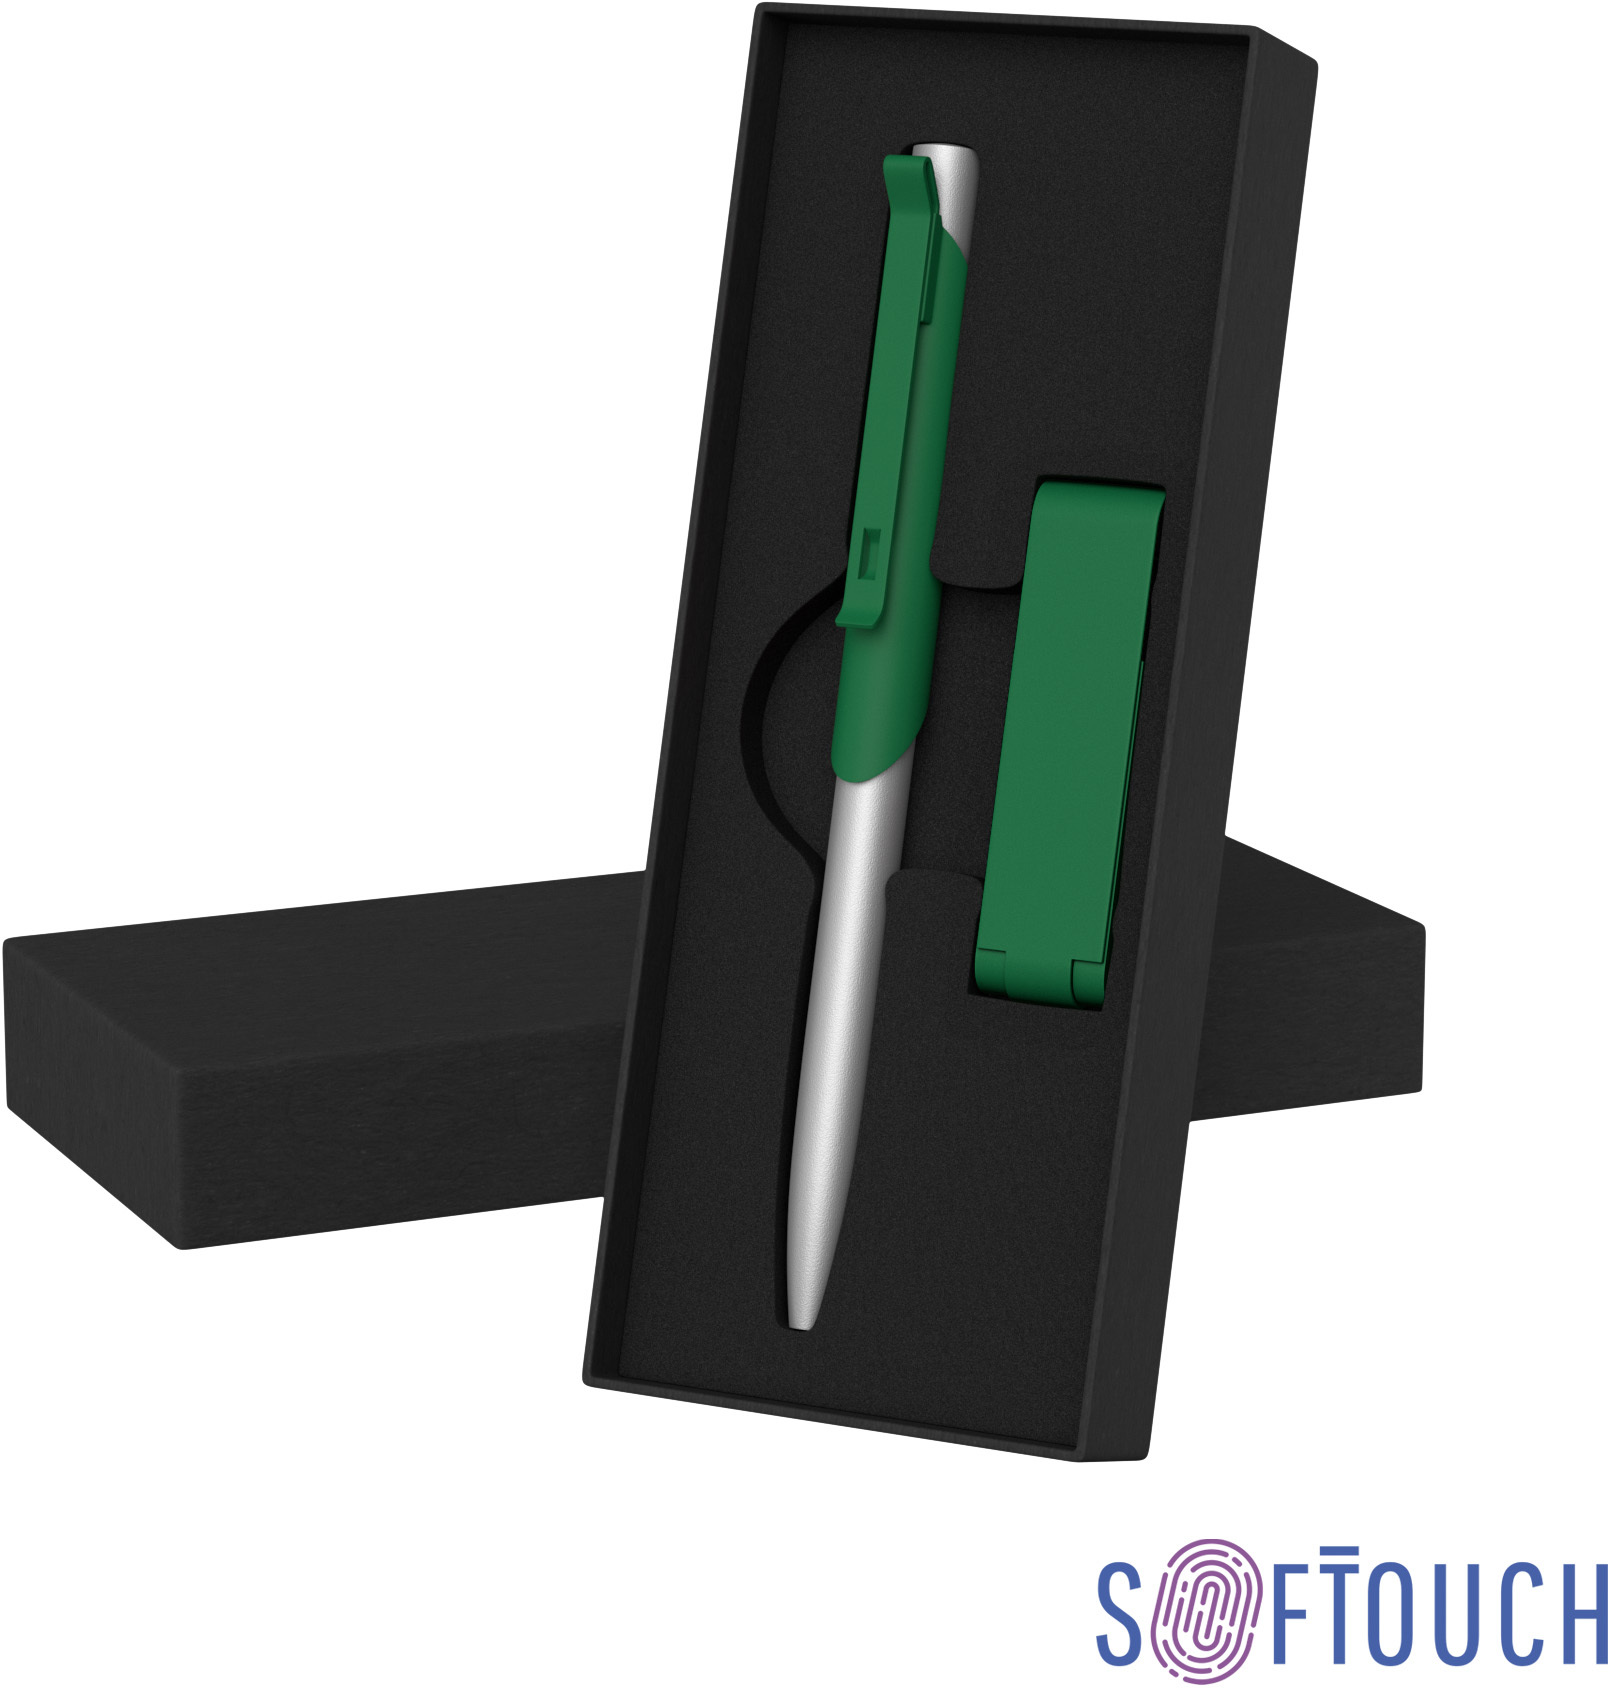 Артикул: E6922-61S/8Gb — Набор ручка "Skil" + флеш-карта "Case" 8 Гб в футляре, покрытие soft touch